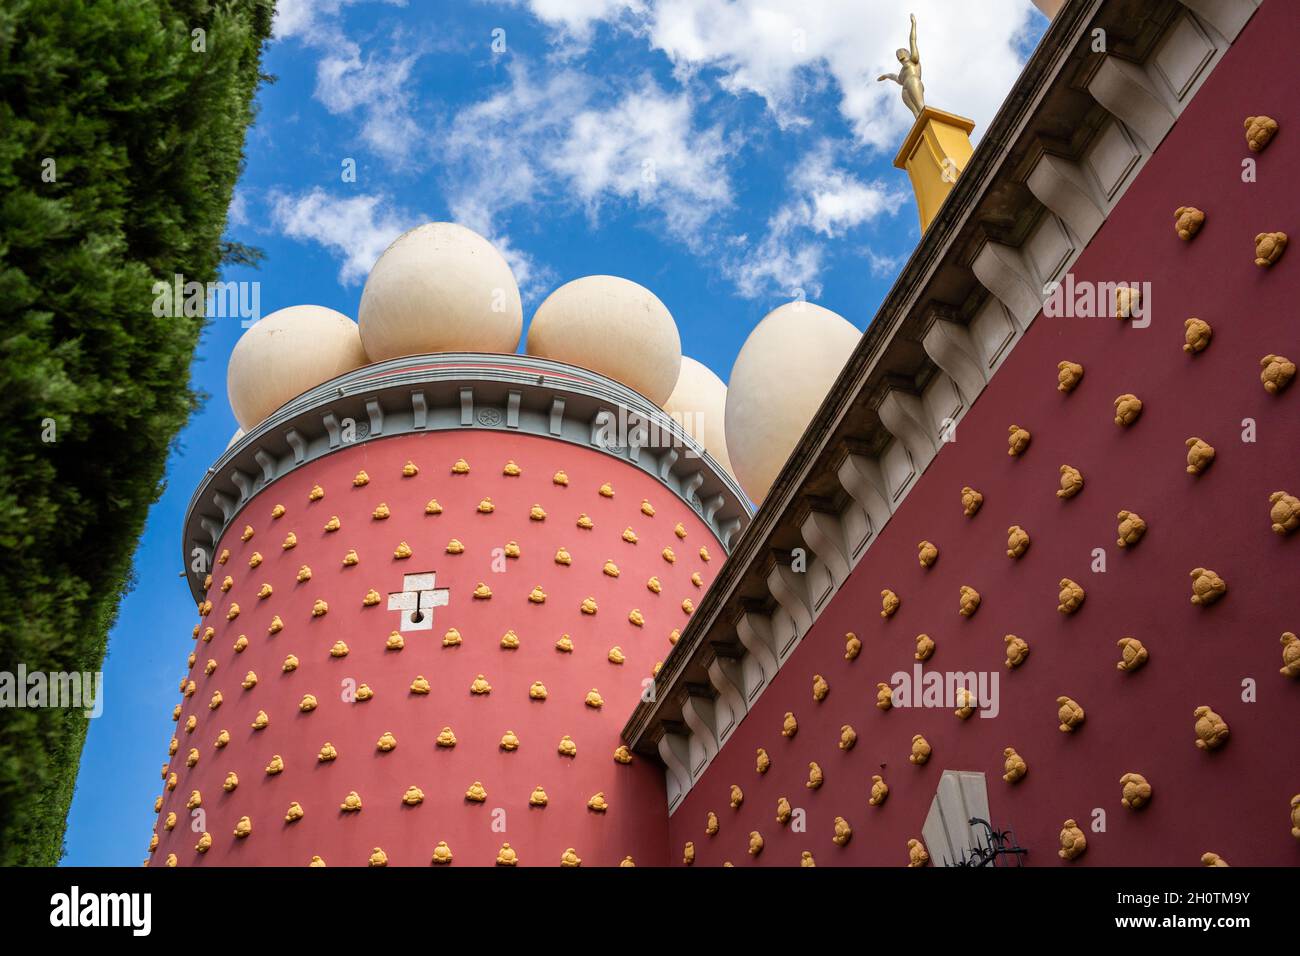 Figueras, Gerona, Espagne - 18 septembre 2021 : détail de la façade extérieure du théâtre-musée Dali.Musée entièrement dédié à Salvador Dalí.Les énormes œufs Banque D'Images